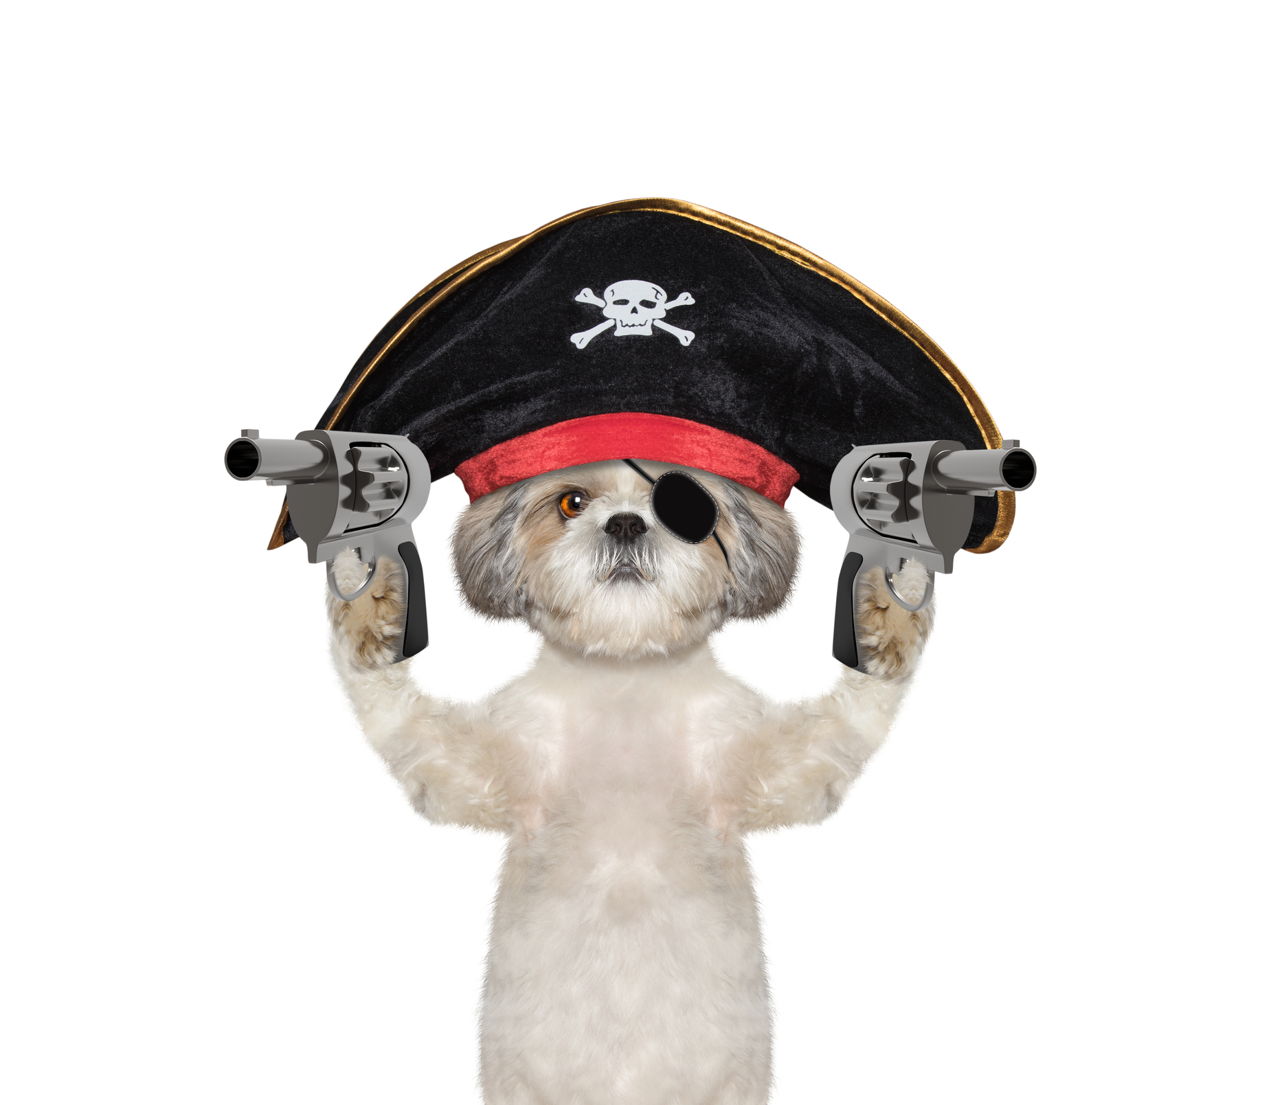 1280-617588322-dog-in-a-pirate-costume-w